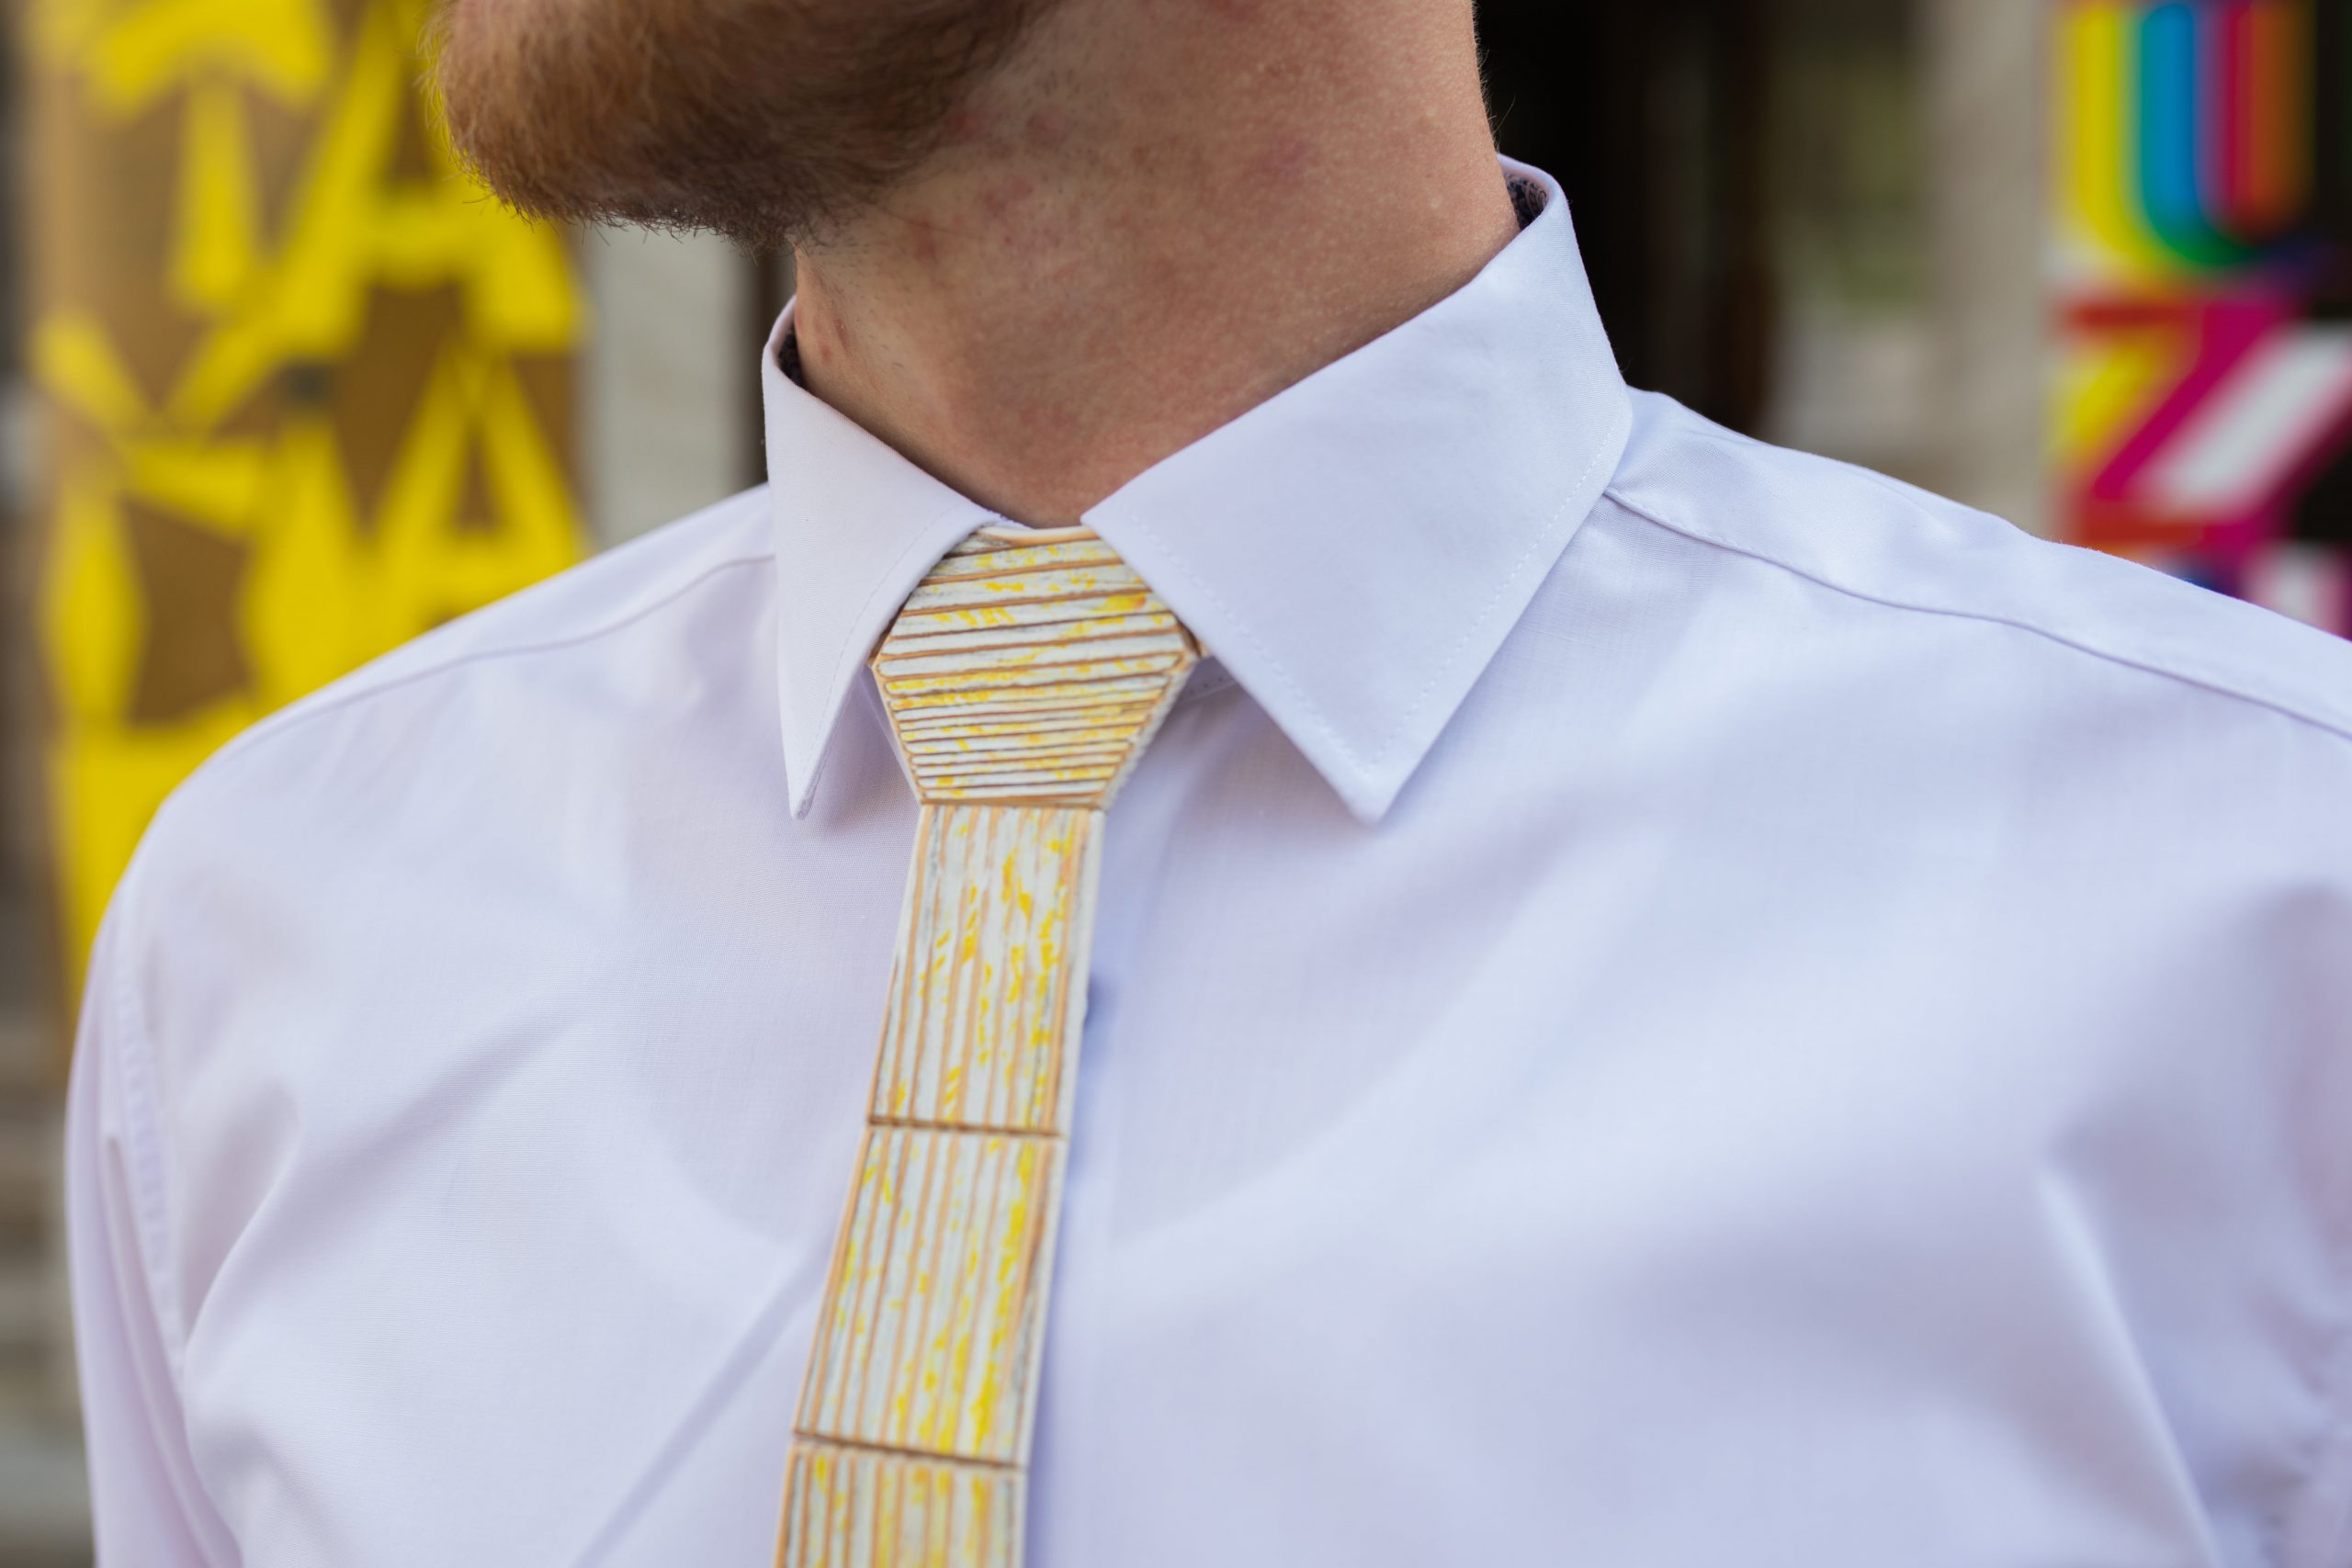 Drevená pánska kravata Retro žltá "MARKstyle"